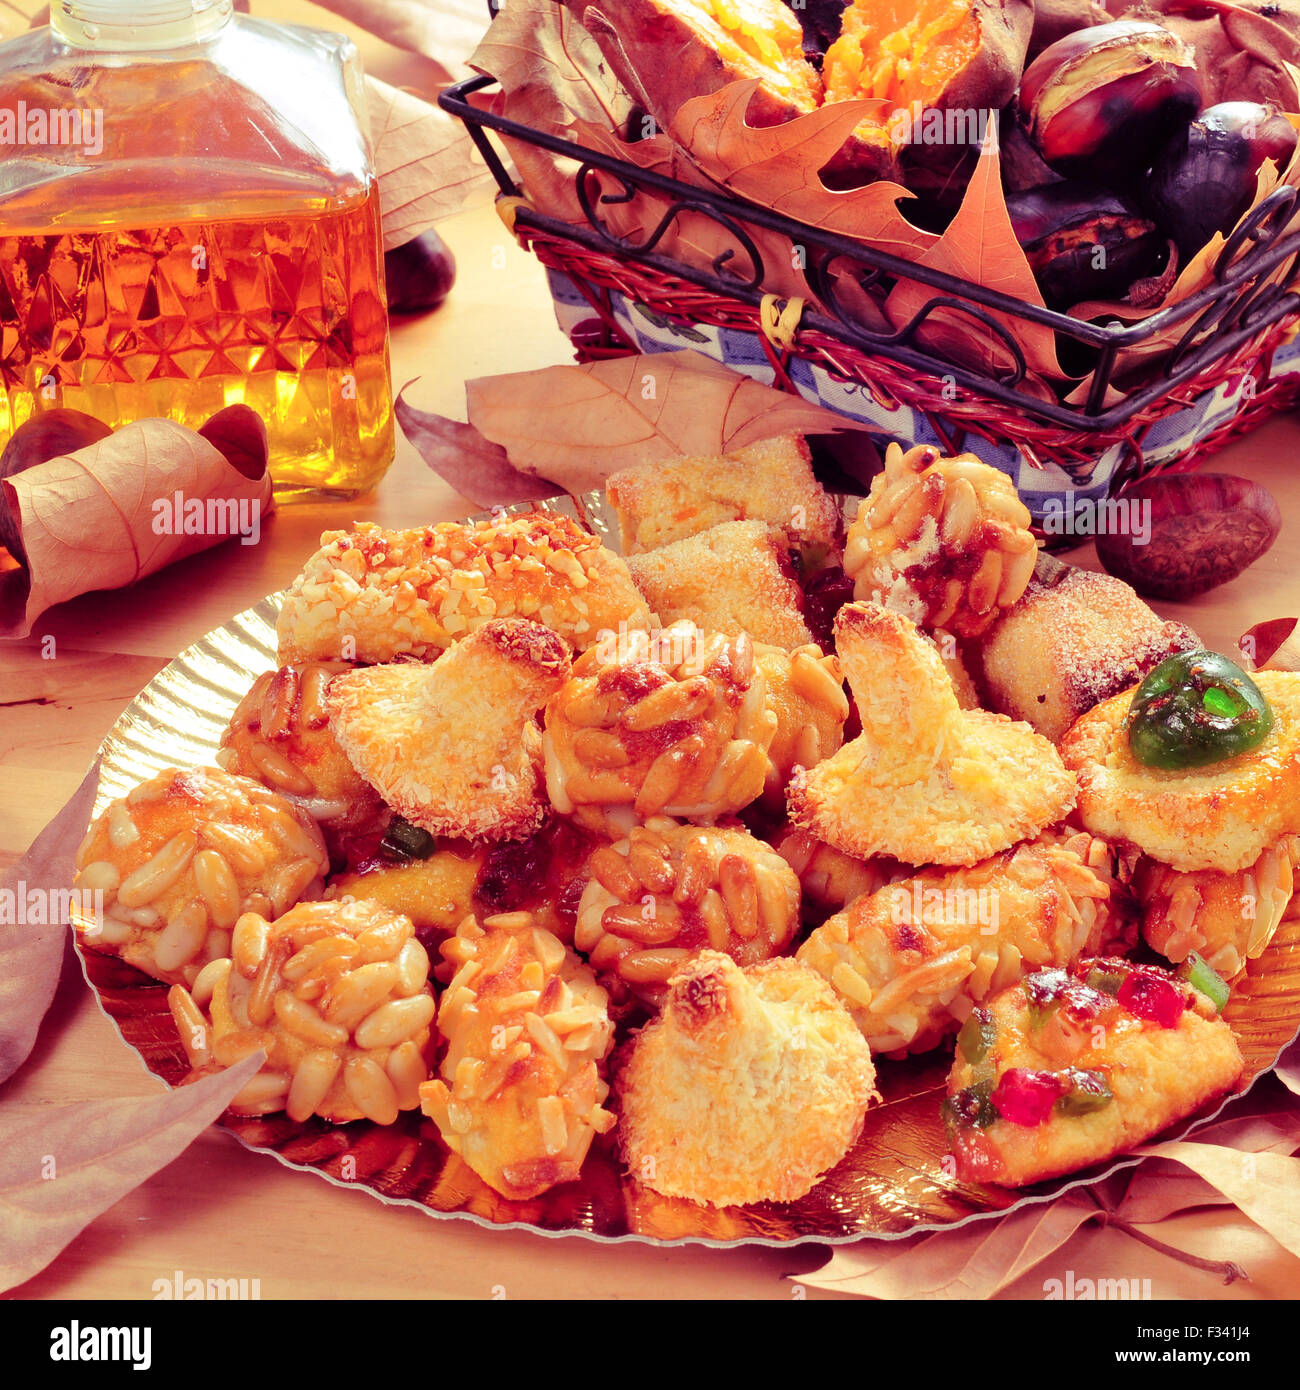 Nahaufnahme einer Platte mit Panellets, einige geröstete Kastanien und Süßkartoffeln in einen Korb und süßer Wein in einer Glasflasche, Eiterung Stockfoto